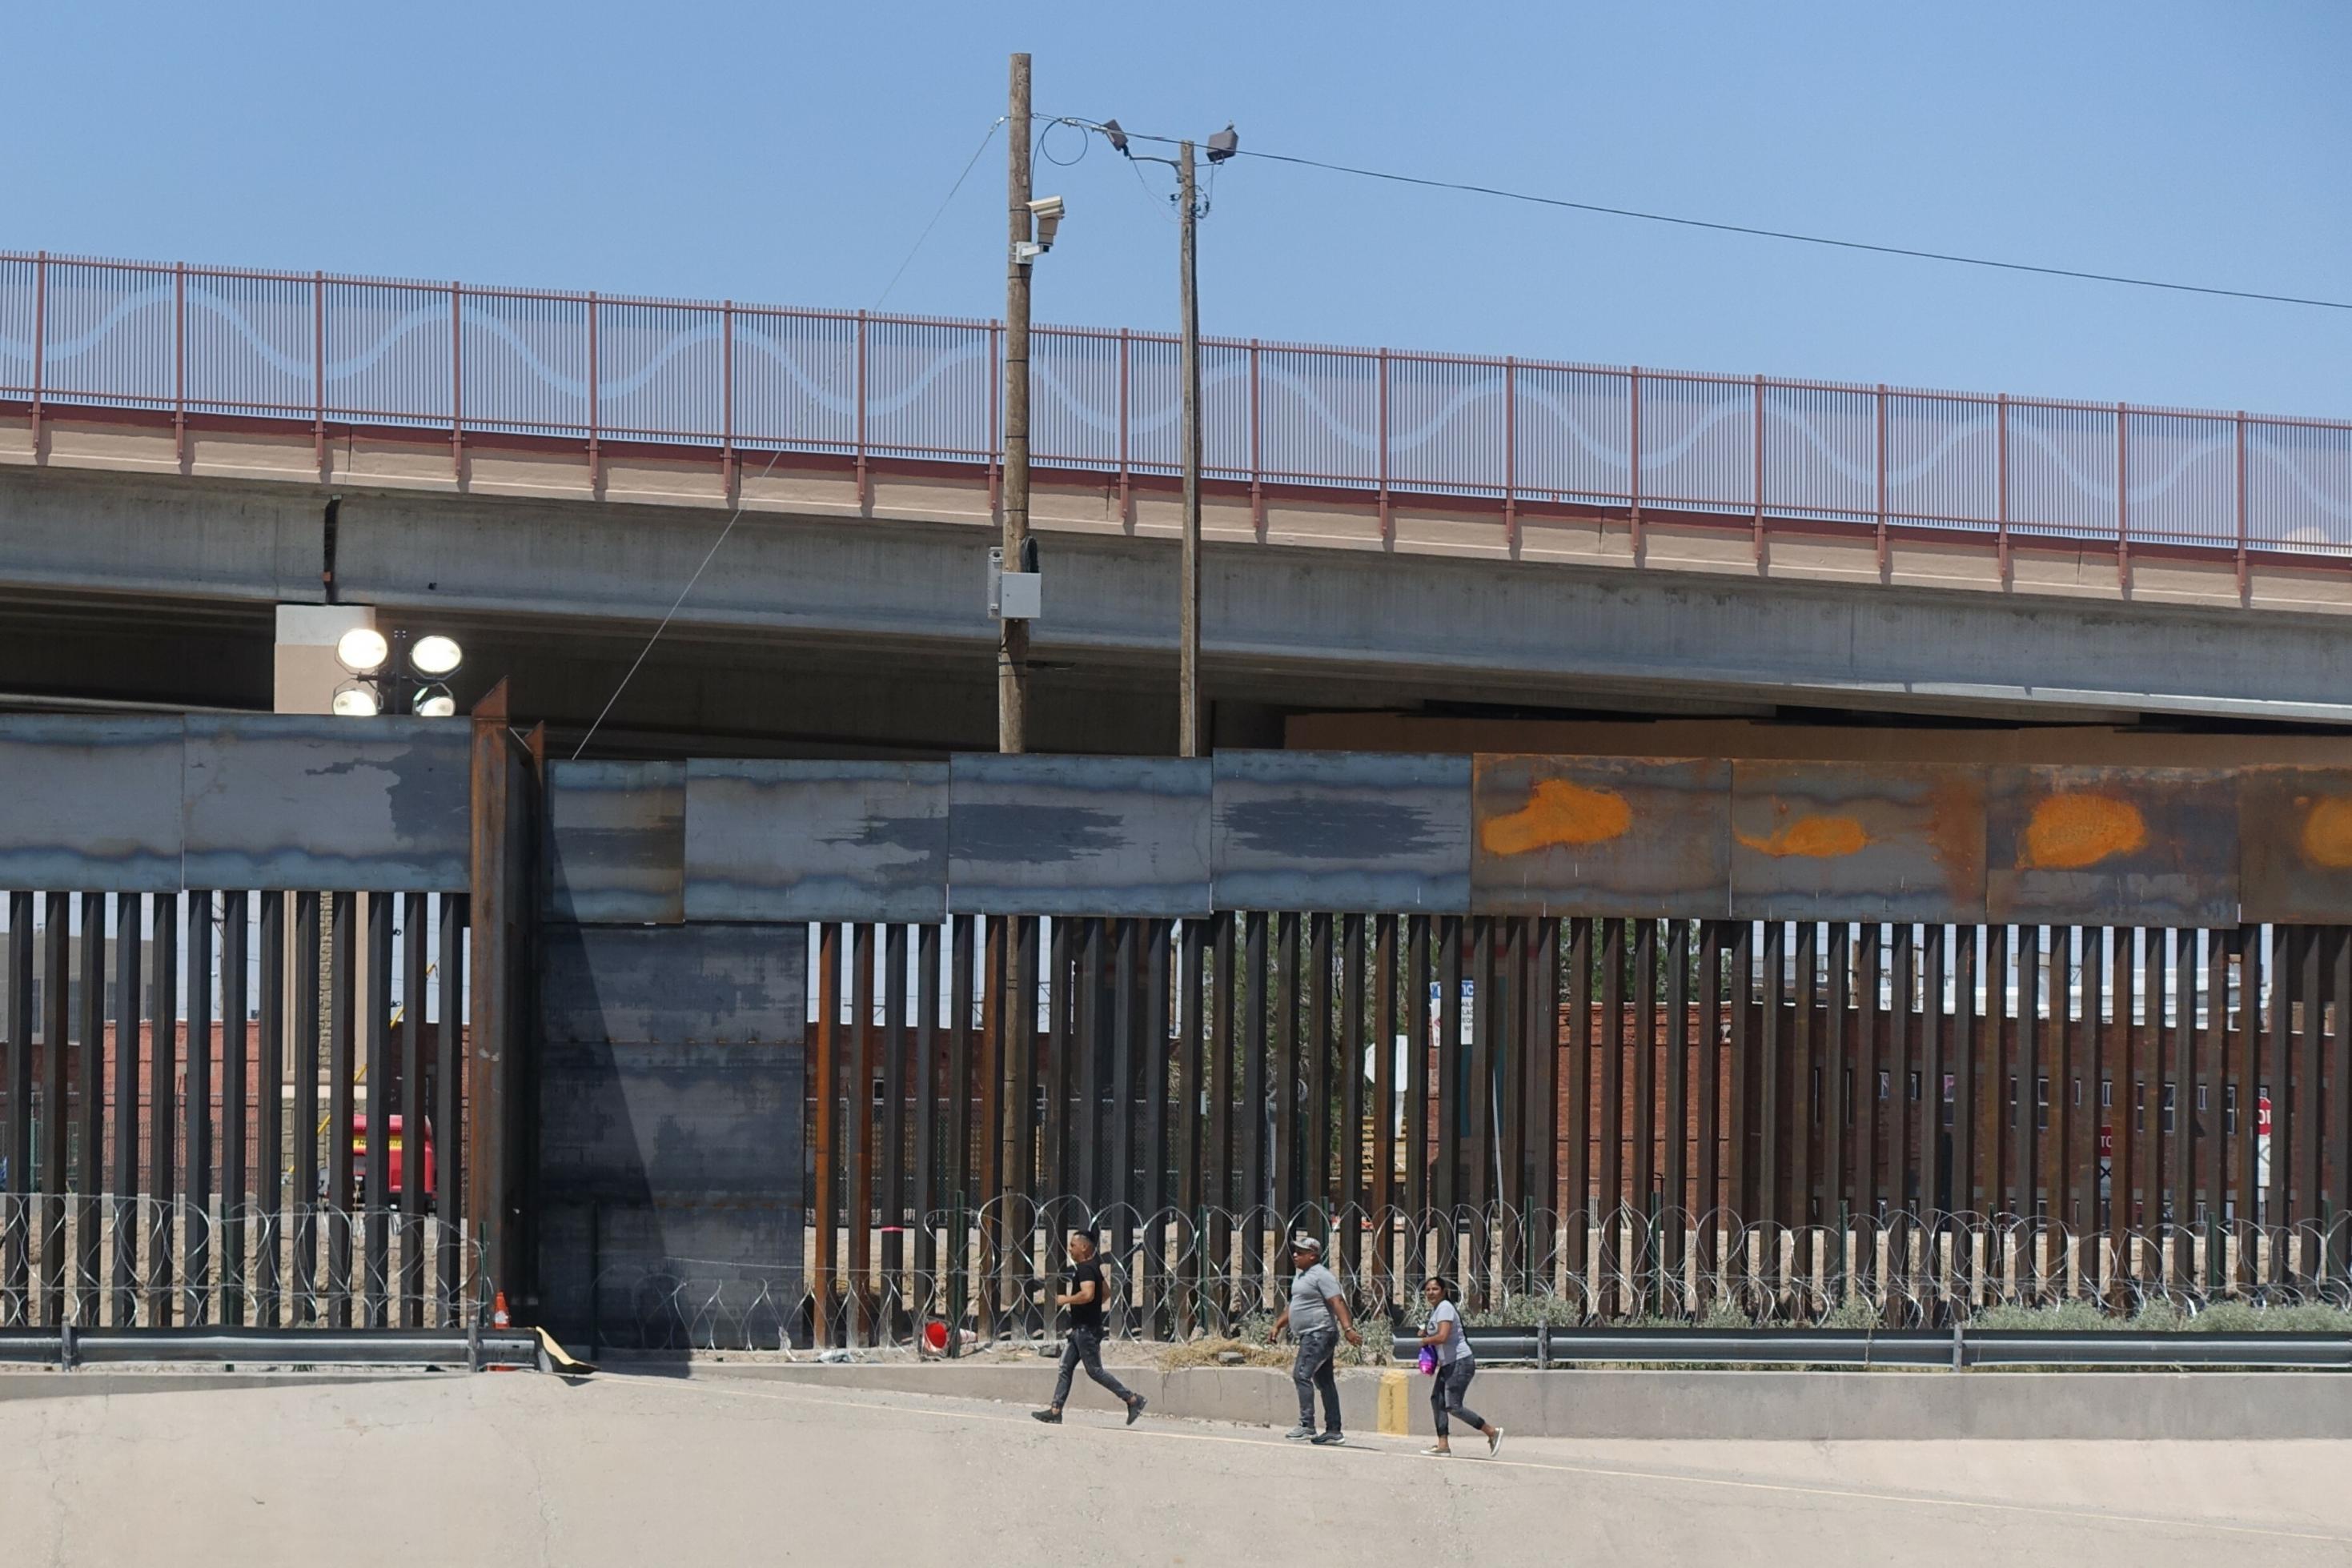 Das Foto zeigt die Grenzanlage im mexikanischen Ciudad Juarez, darüber ist eine Autobrücke zu sehen. Drei Passanten laufen an der Grenzmauer vorbei.